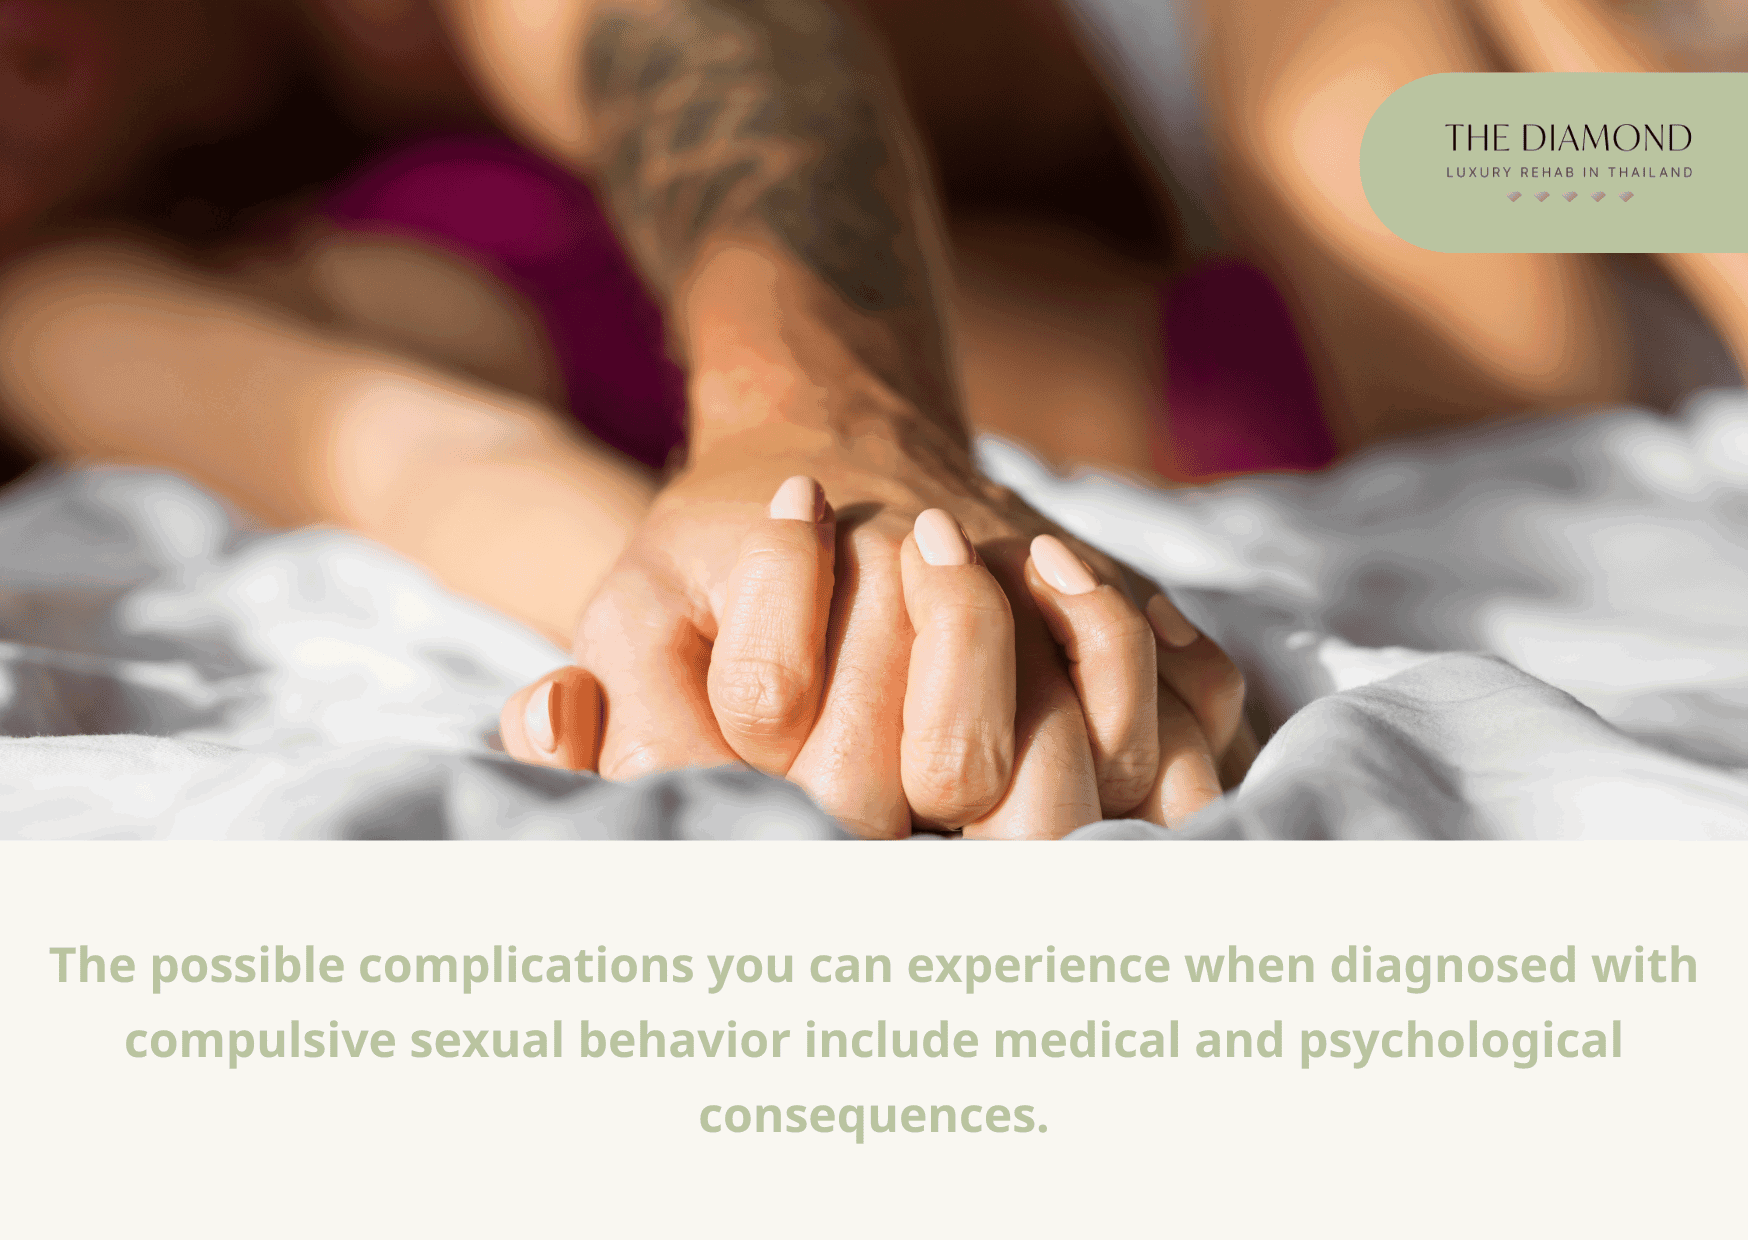 Compulsive sexual behavior complications